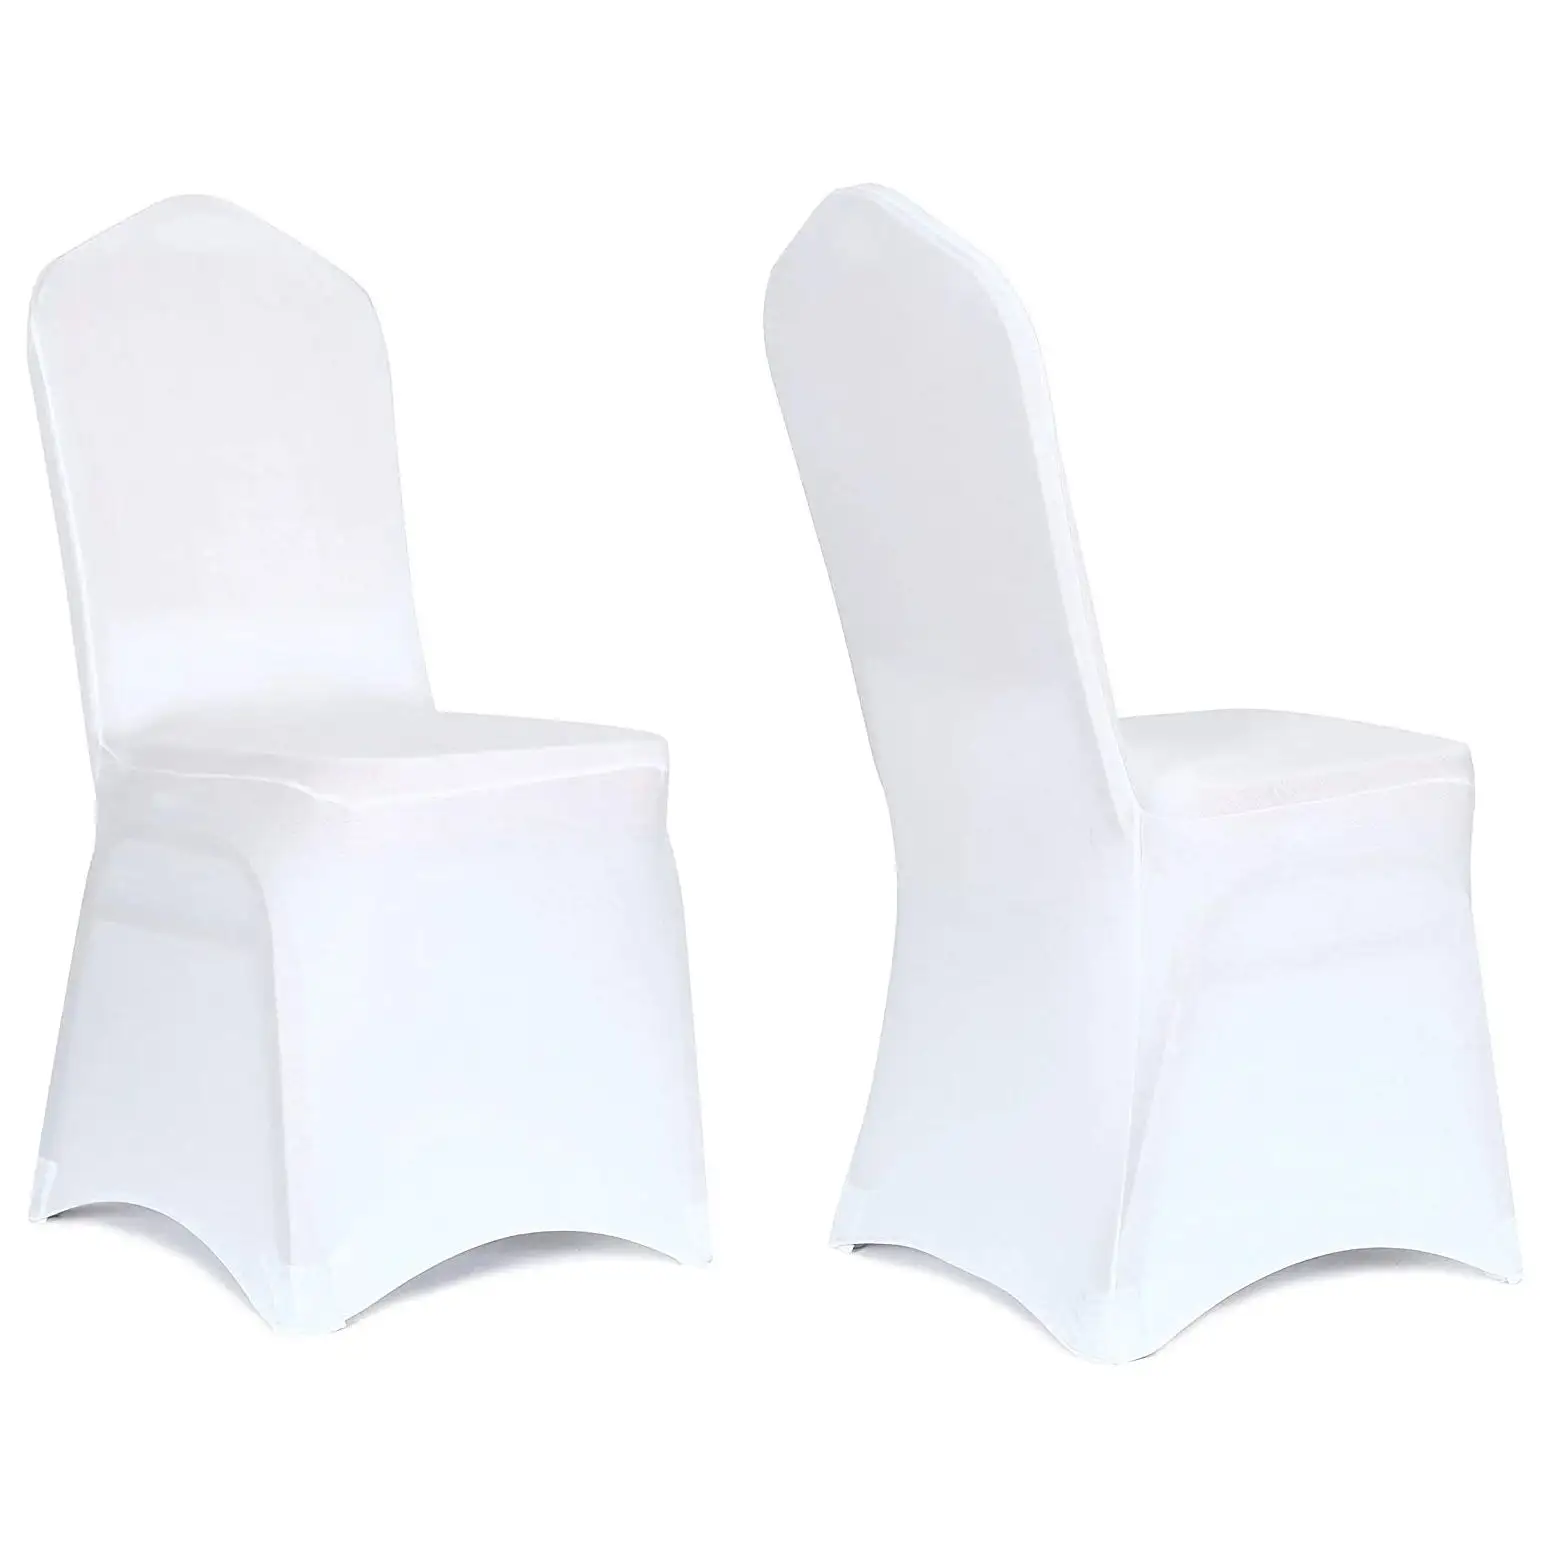 50 stück stretch-stuhlschonbezug event party bankett weiße spandex-stuhlschalen für hochzeit